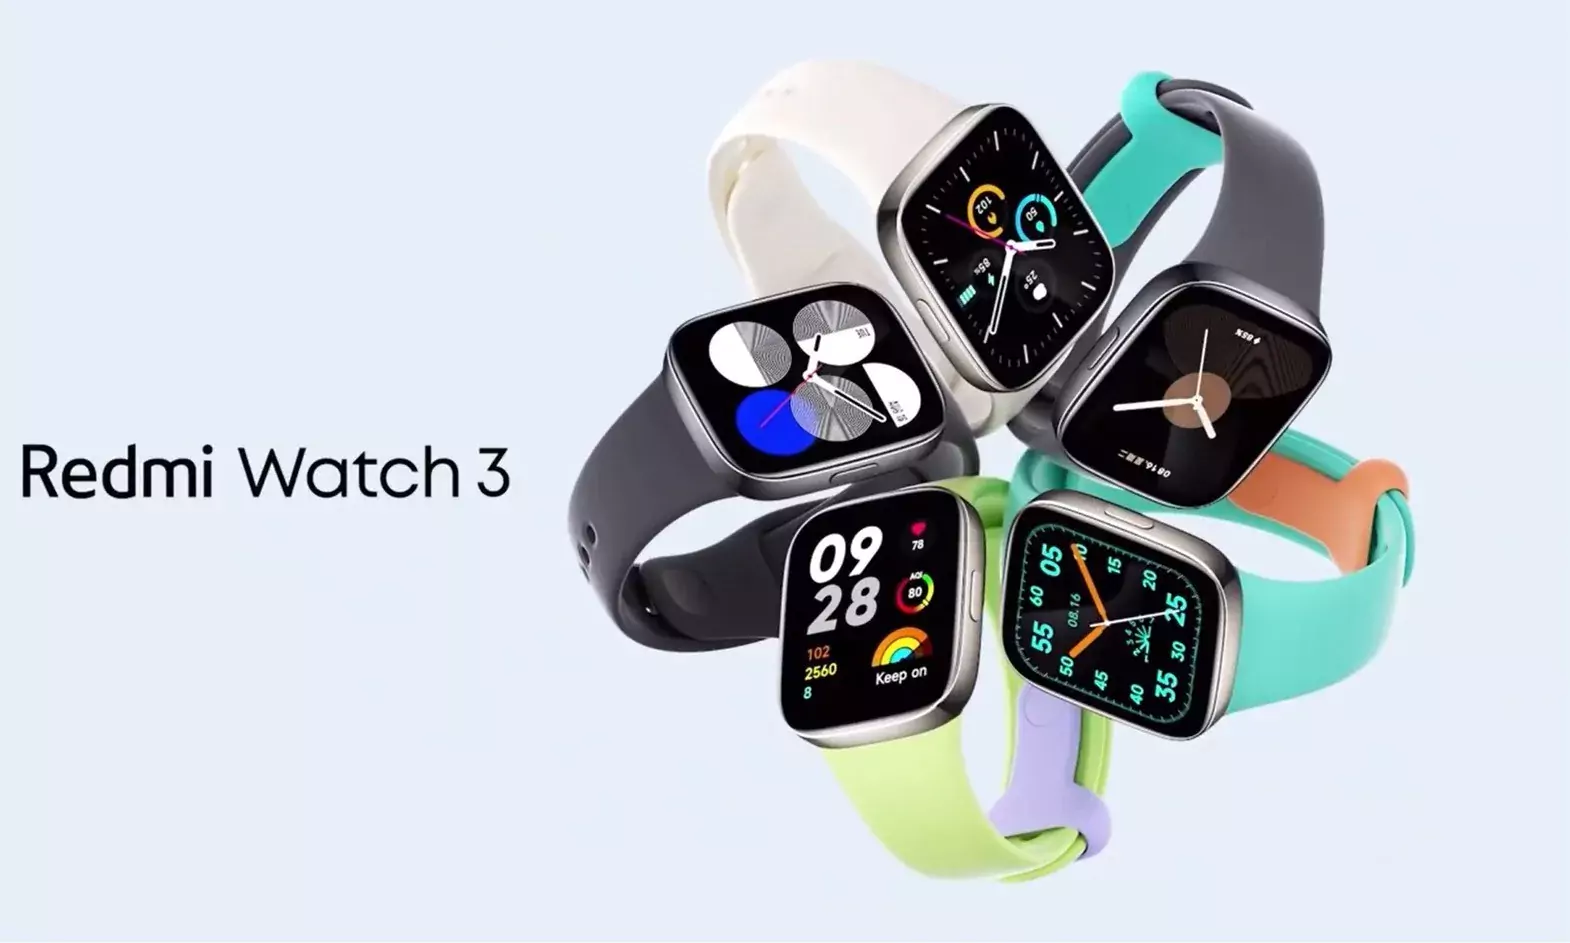 Uygun fiyatlı akıllı saat Redmi Watch 3 tanıtıldı: İşte fiyatı ve özellikleri!